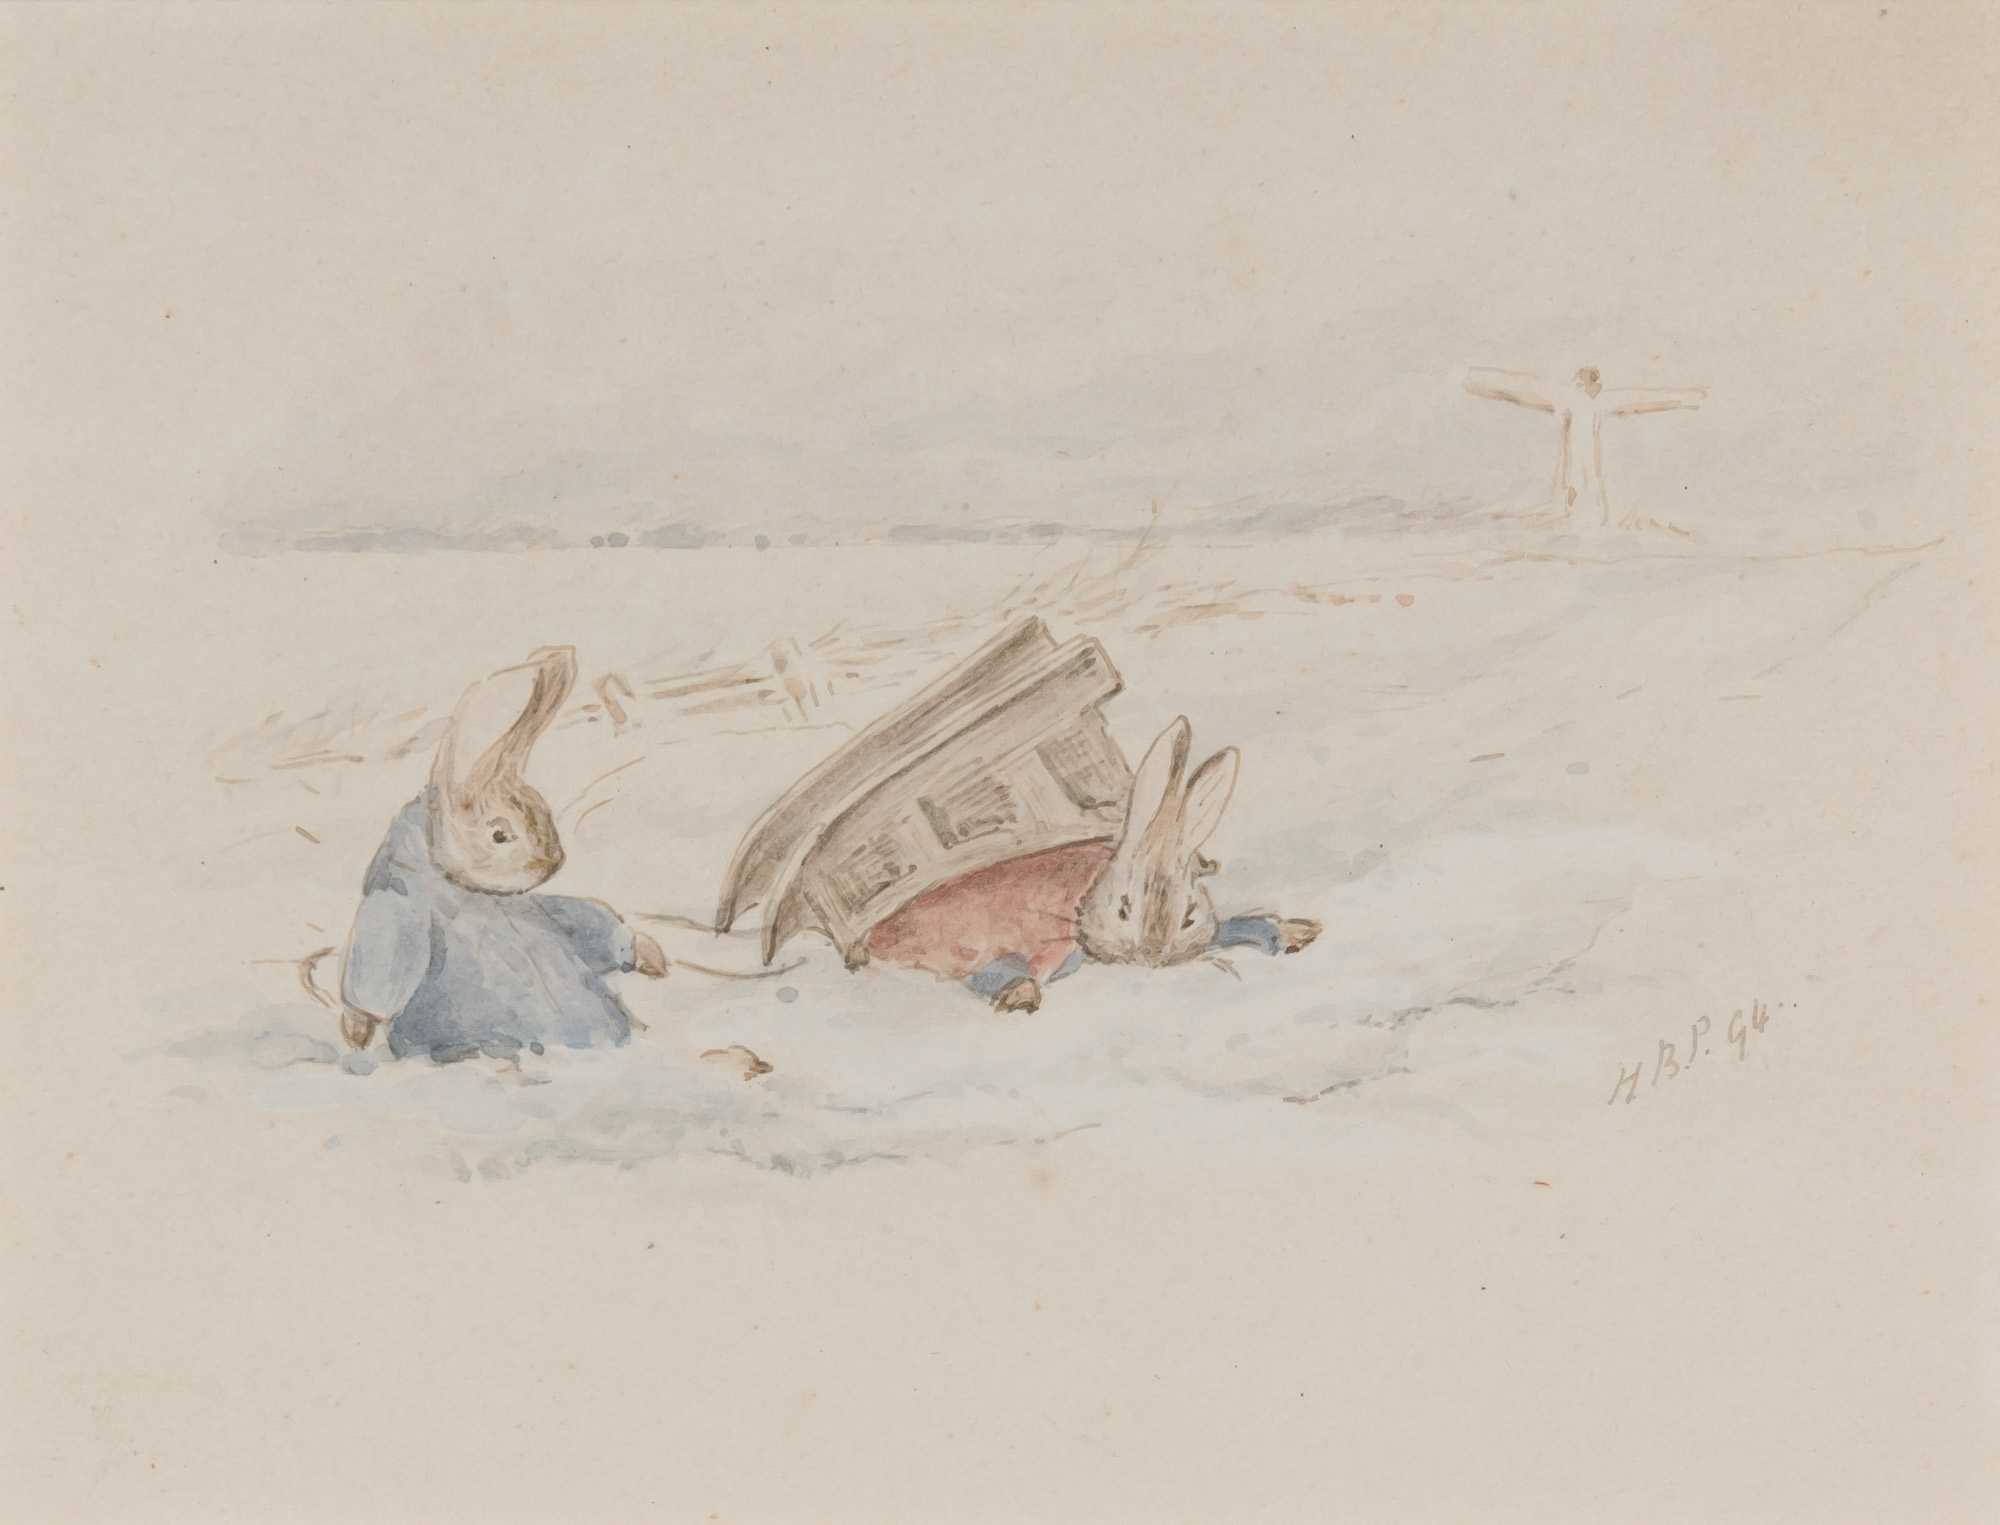 Nyúl Péter szánkózik by Beatrix Potter - 1907 - 9 x 11 cm 